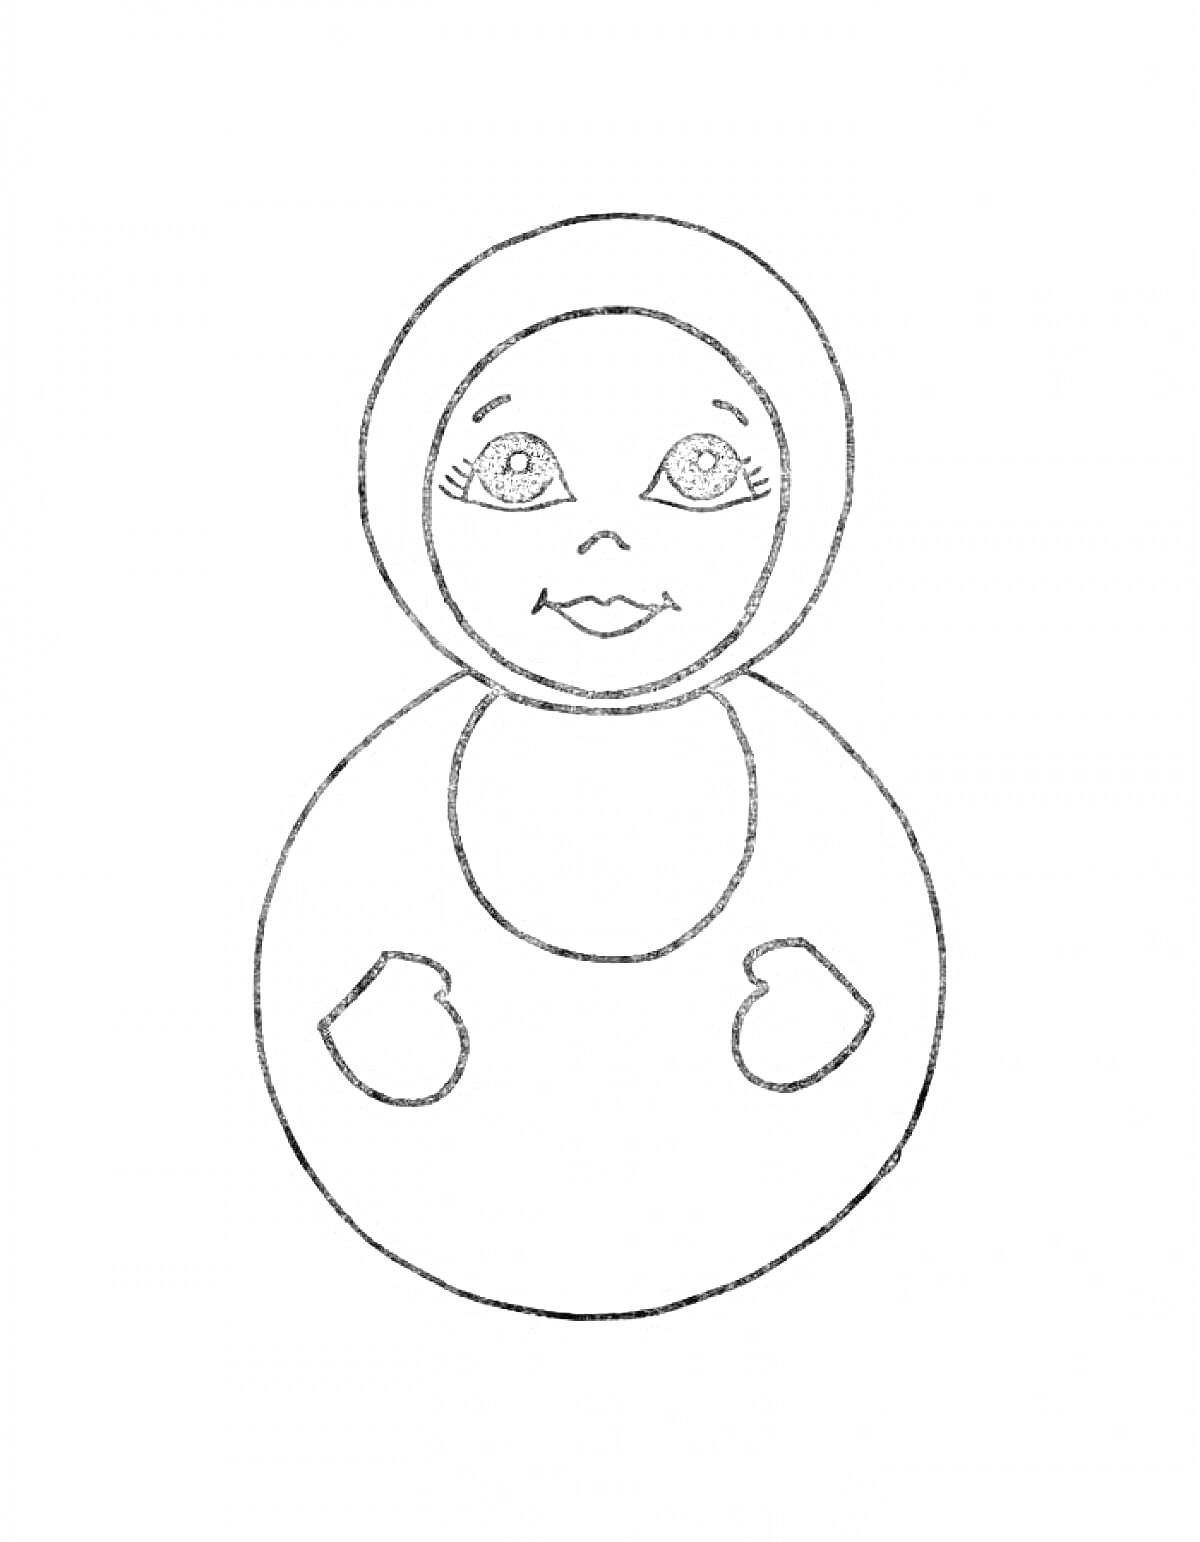 Раскраска Неваляшка с лицом, глазами, ртом, и двумя руками на круглом теле.